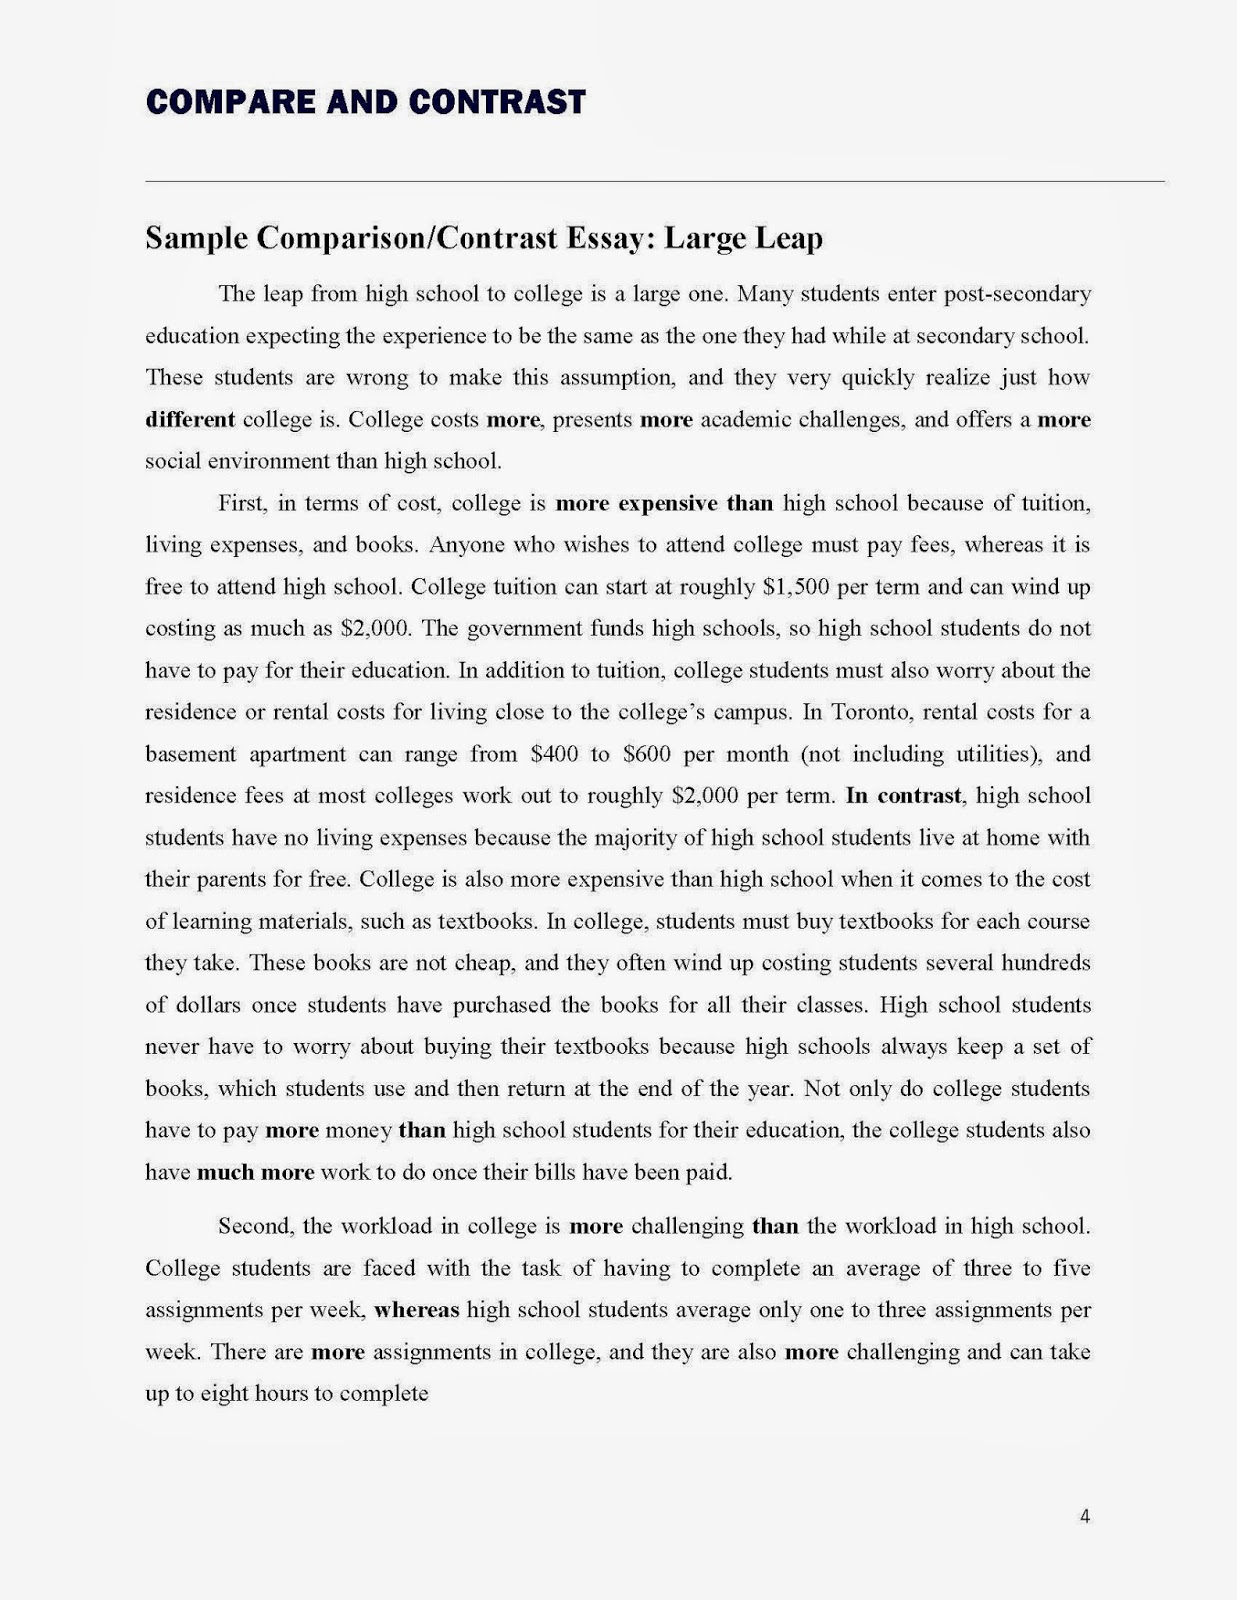 Good comparison contrast essay topics